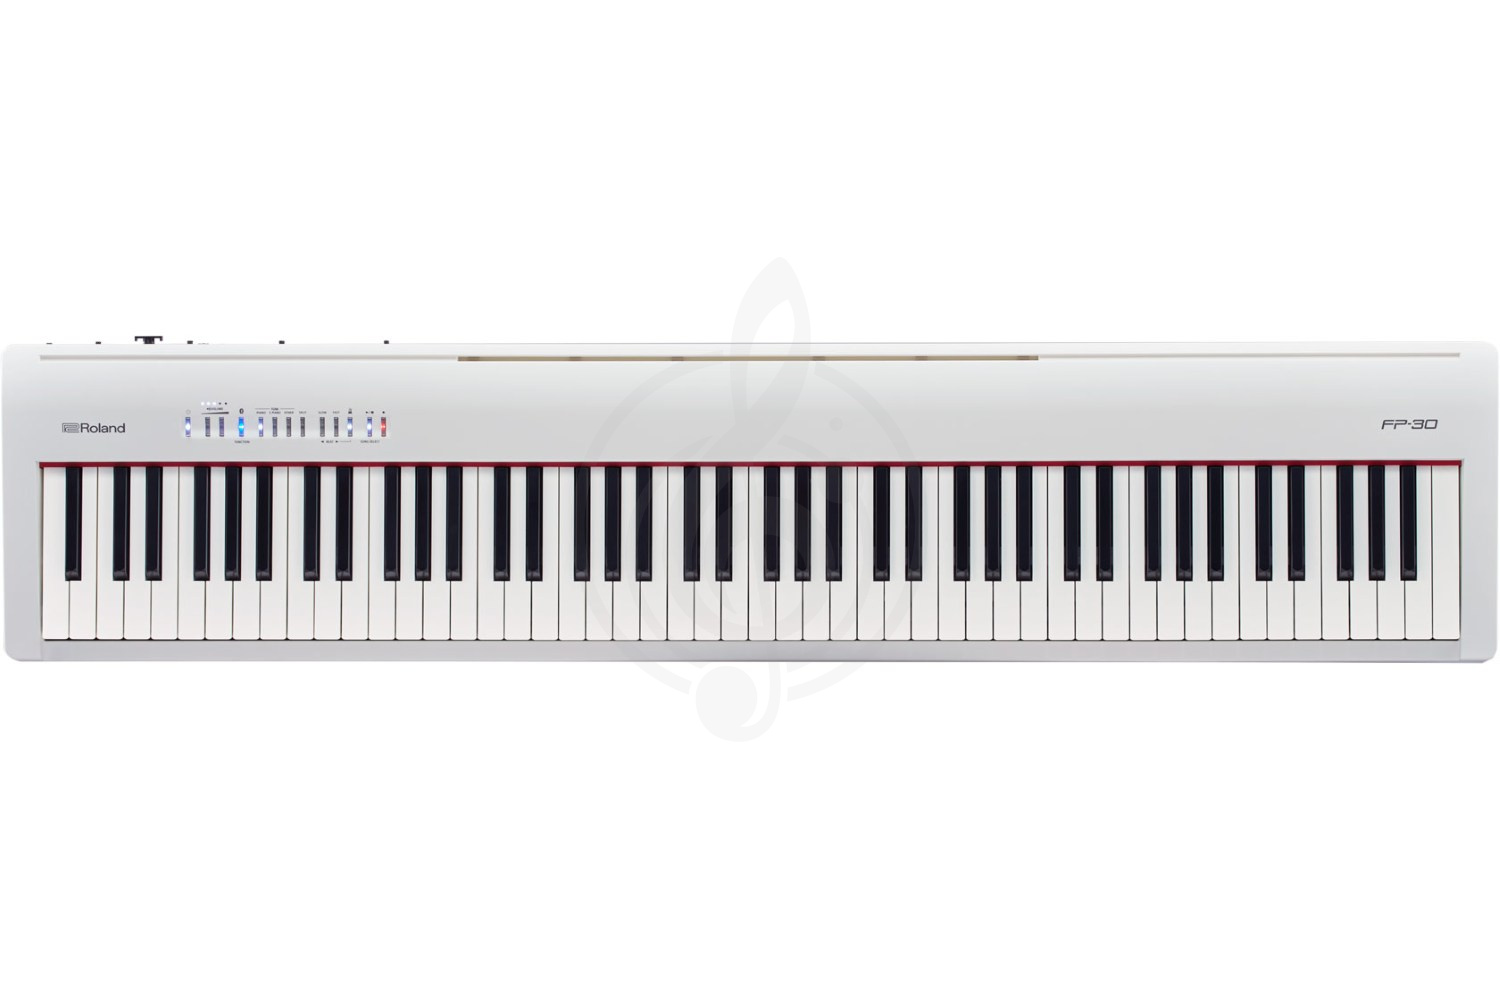 Цифровое пианино Цифровые пианино Roland Roland FP-30-WH - Цифровое пианино FP-30-WH - фото 2